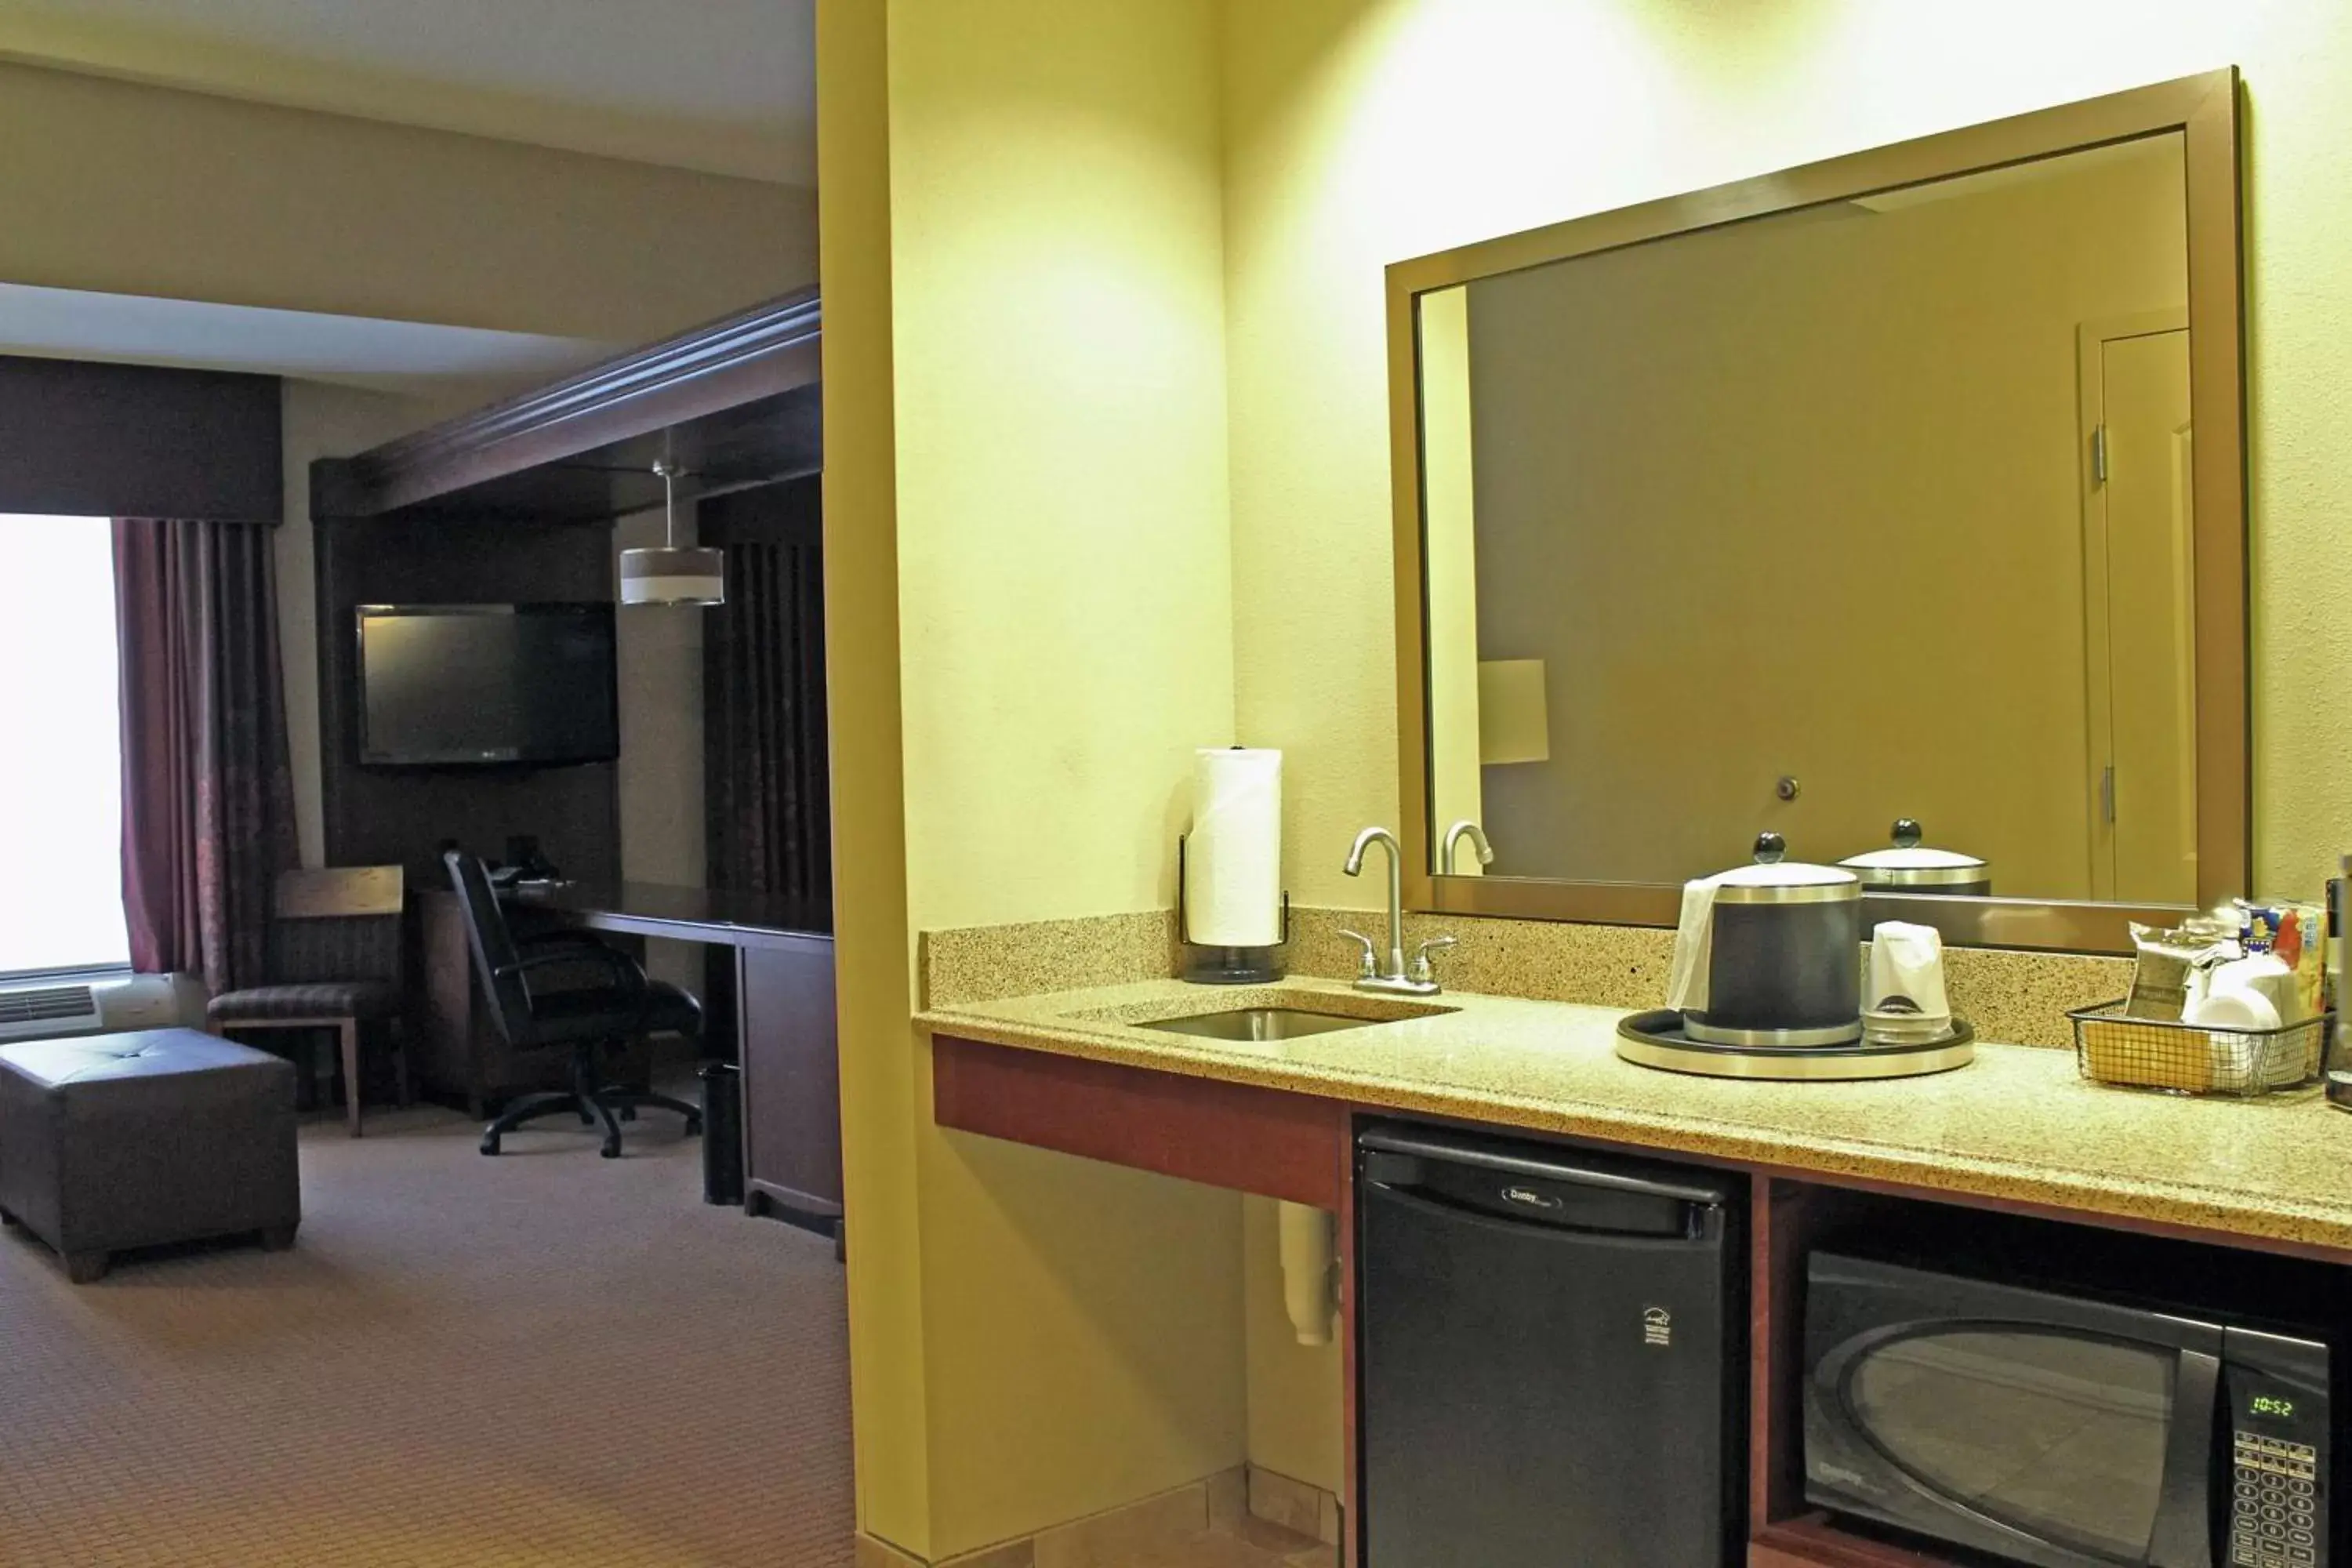 Bedroom, Bathroom in Hampton Inn & Suites - Saint Louis South Interstate 55